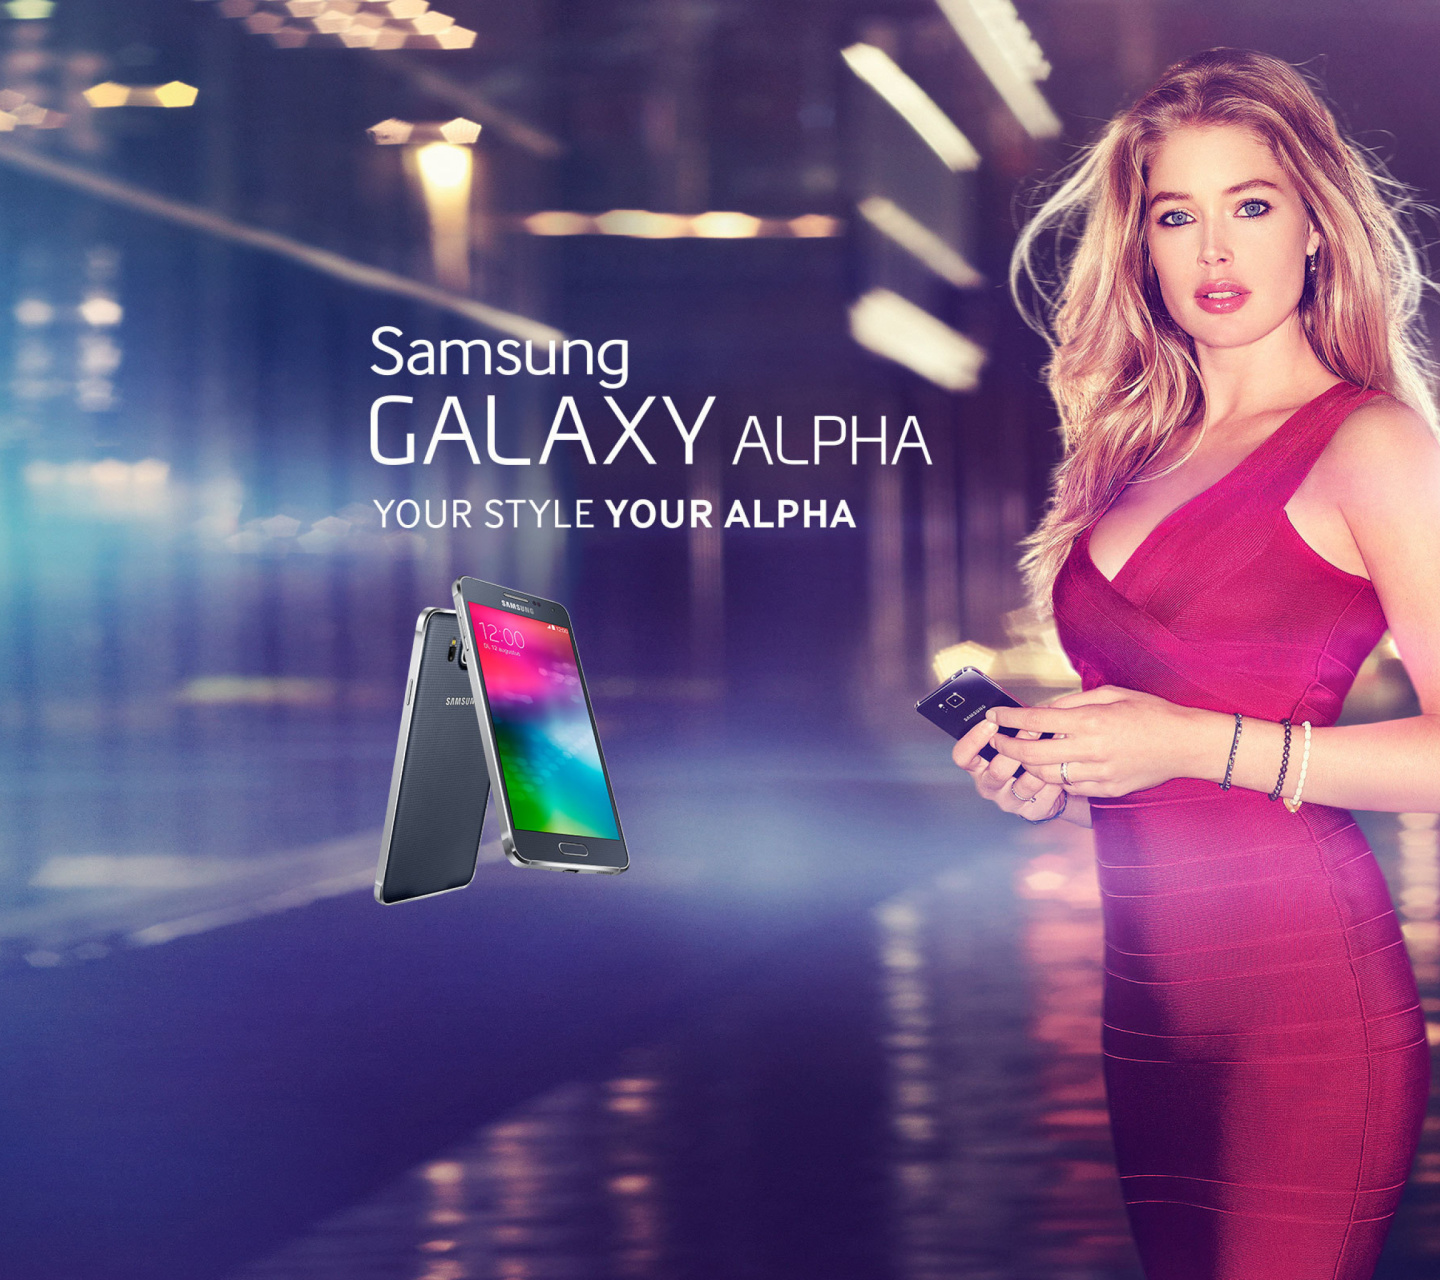 Das Samsung Galaxy Alpha Advertisement with Doutzen Kroes Wallpaper 1440x1280